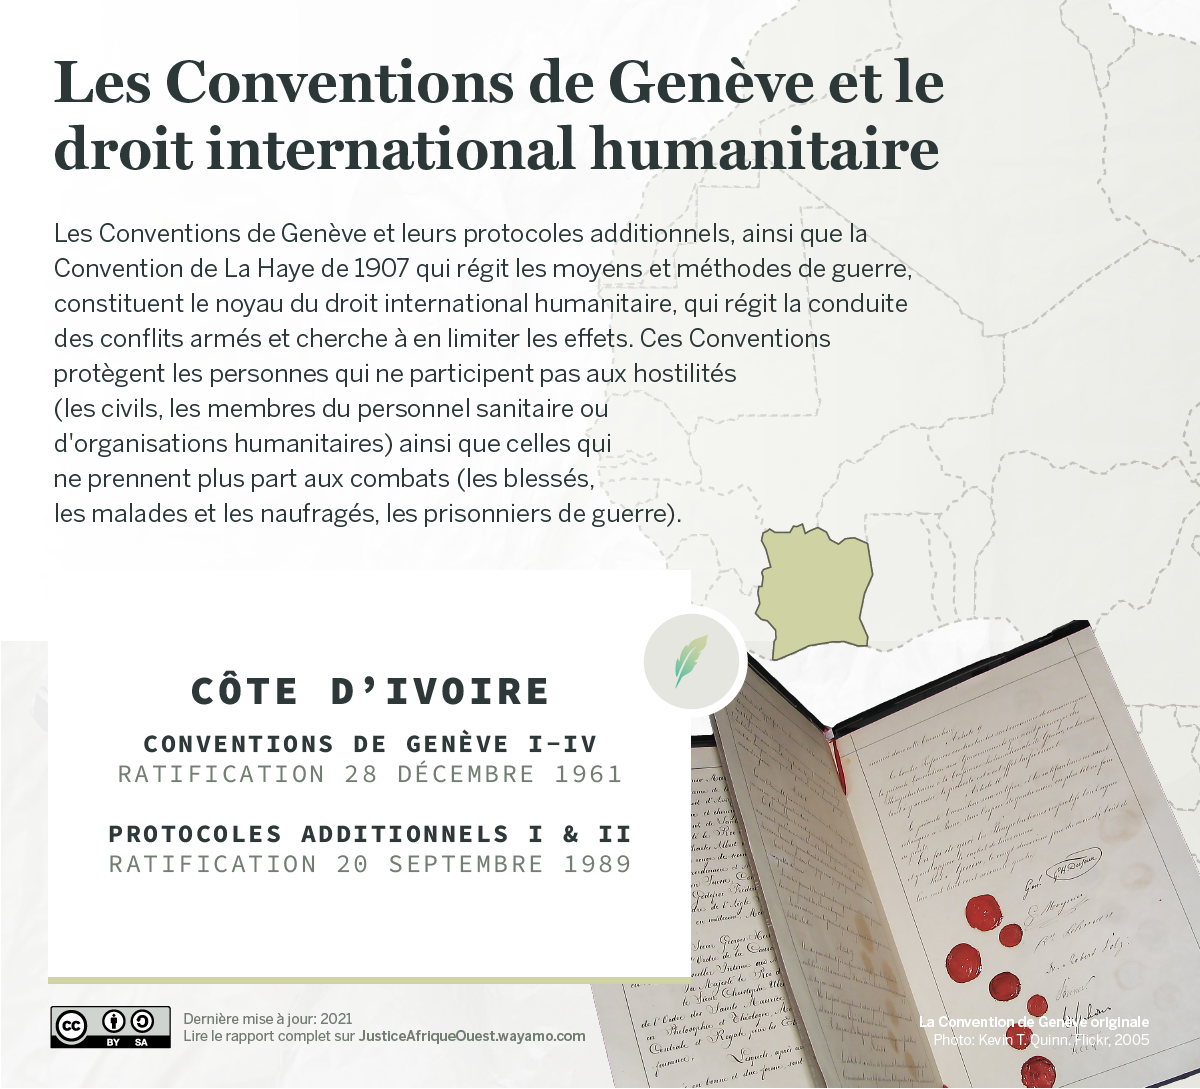 COTE D'IVOIRE_Conventions de Genève - Wayamo Foundation (CC BY-SA 4.0)